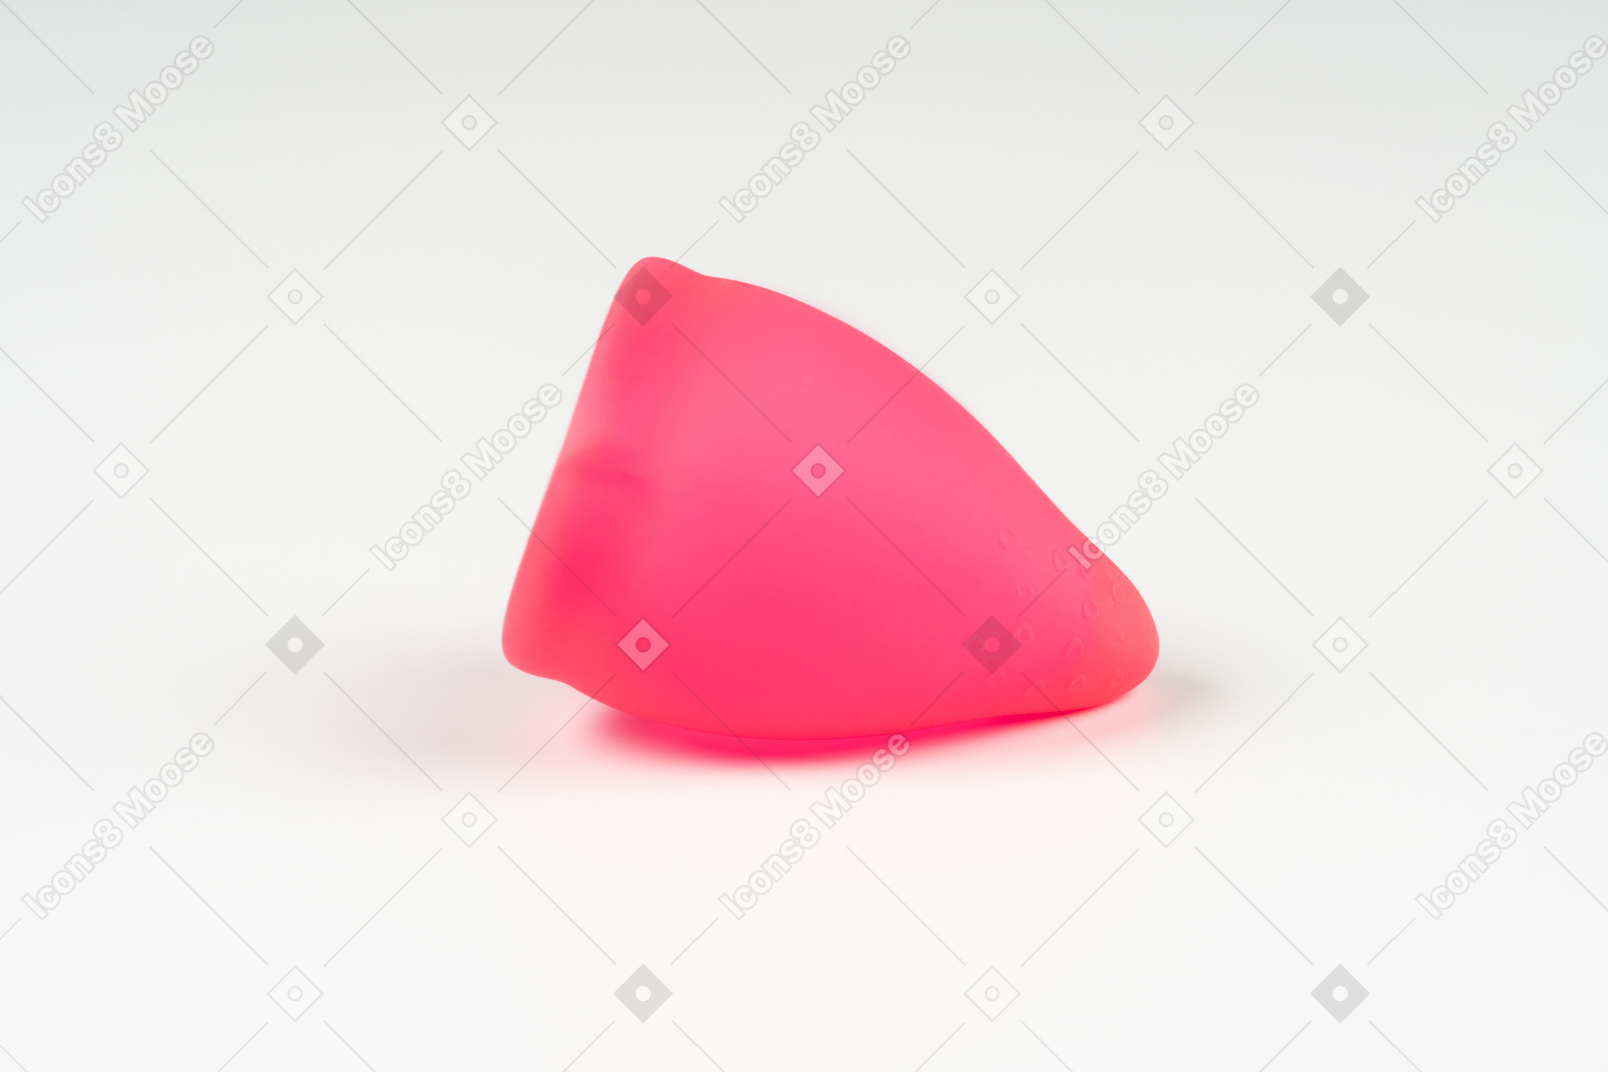 Coppetta mestruale rosa su sfondo bianco